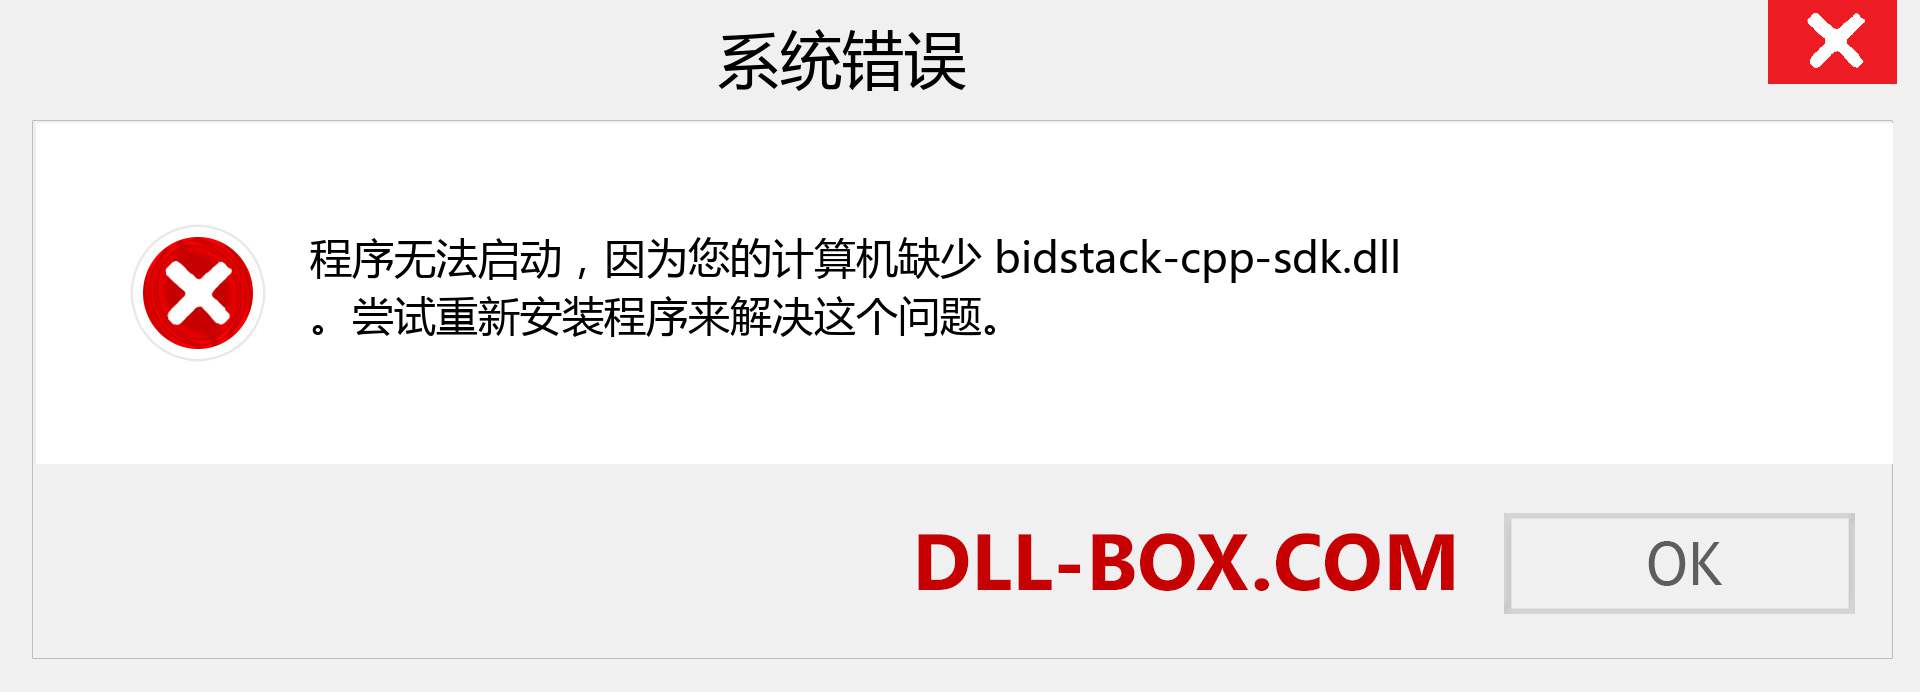 bidstack-cpp-sdk.dll 文件丢失？。 适用于 Windows 7、8、10 的下载 - 修复 Windows、照片、图像上的 bidstack-cpp-sdk dll 丢失错误